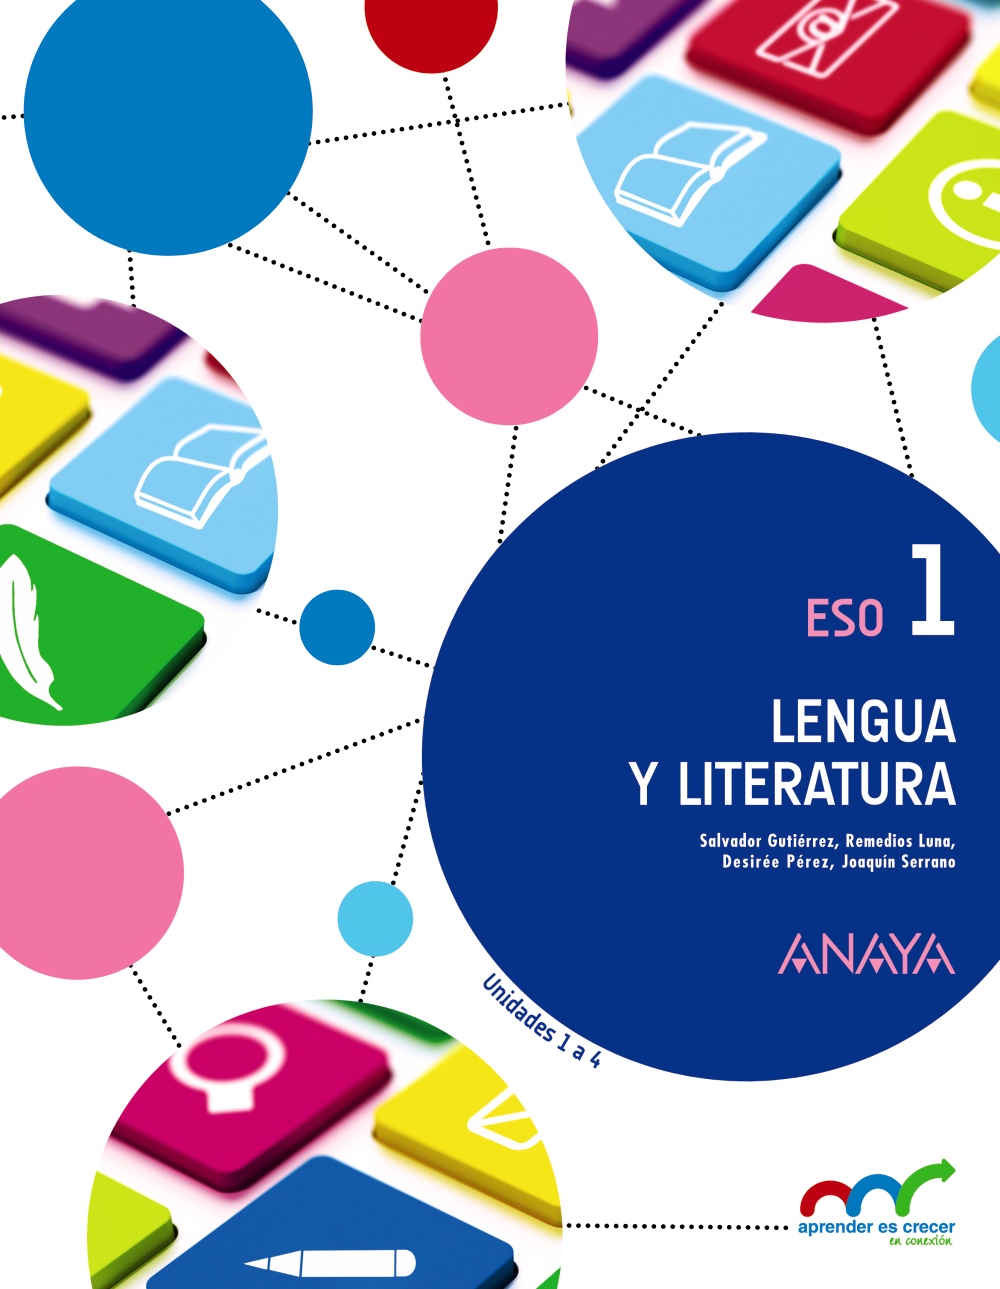 Solucionario Lengua y Literatura 1 ESO Anaya Aprender es Crecer PDF Ejercicios Resueltos-pdf